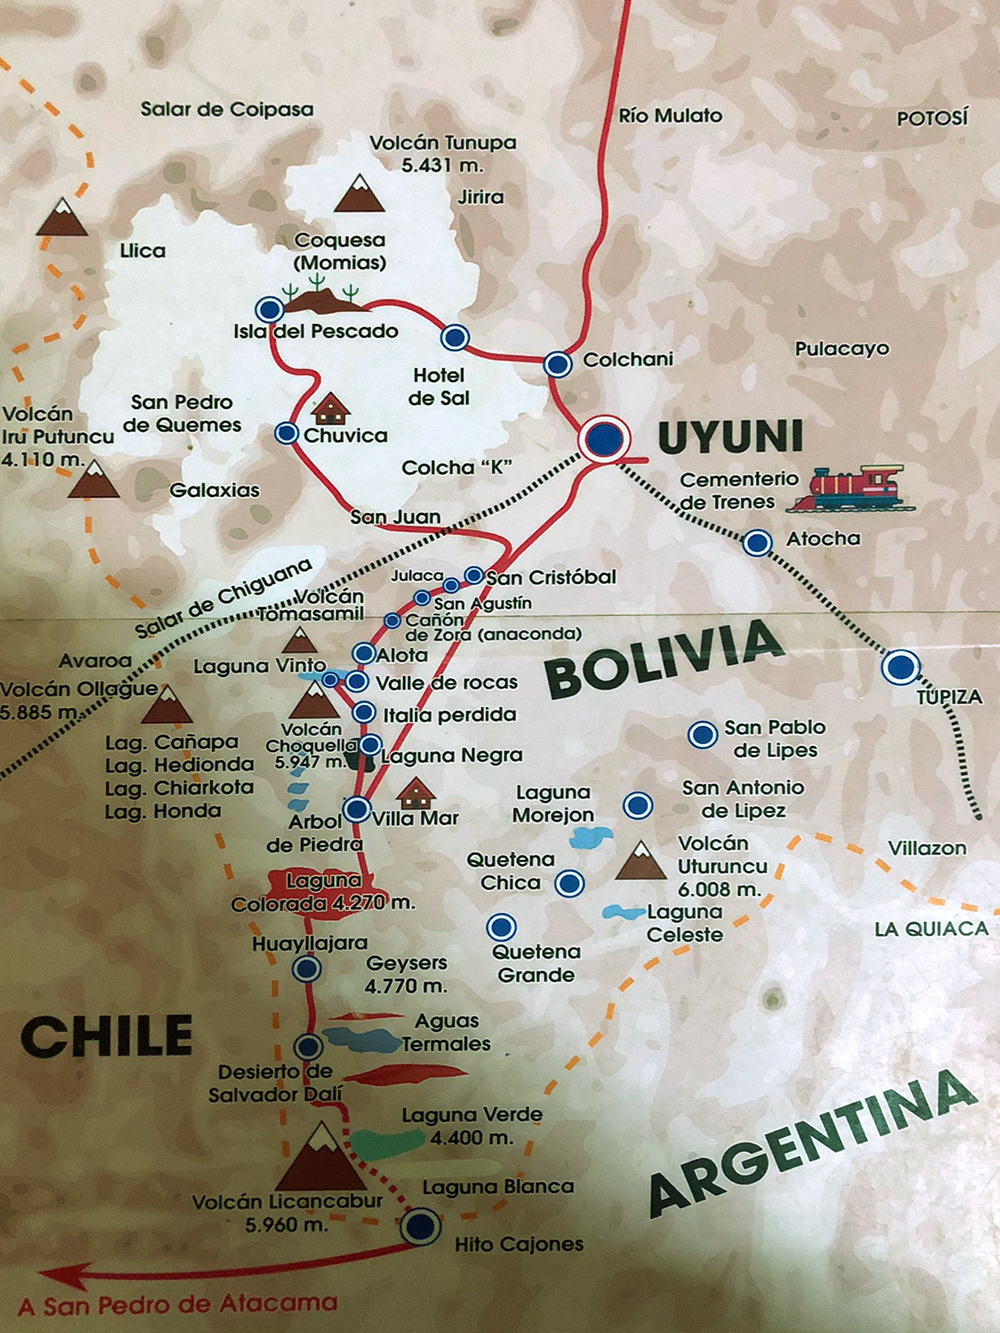 Наш маршрут по национальному парку имени Эдуардо Авароа в Боливии, после лагуны Колорадо он расходится. Левая часть более насыщена природными достопримечательностями, но сложнее для тех, кто восприимчив к горной болезни — часть маршрута пролегает на высоте 4500 метров. Правая часть менее красивая, но и менее сложная. Мы выбрали левую